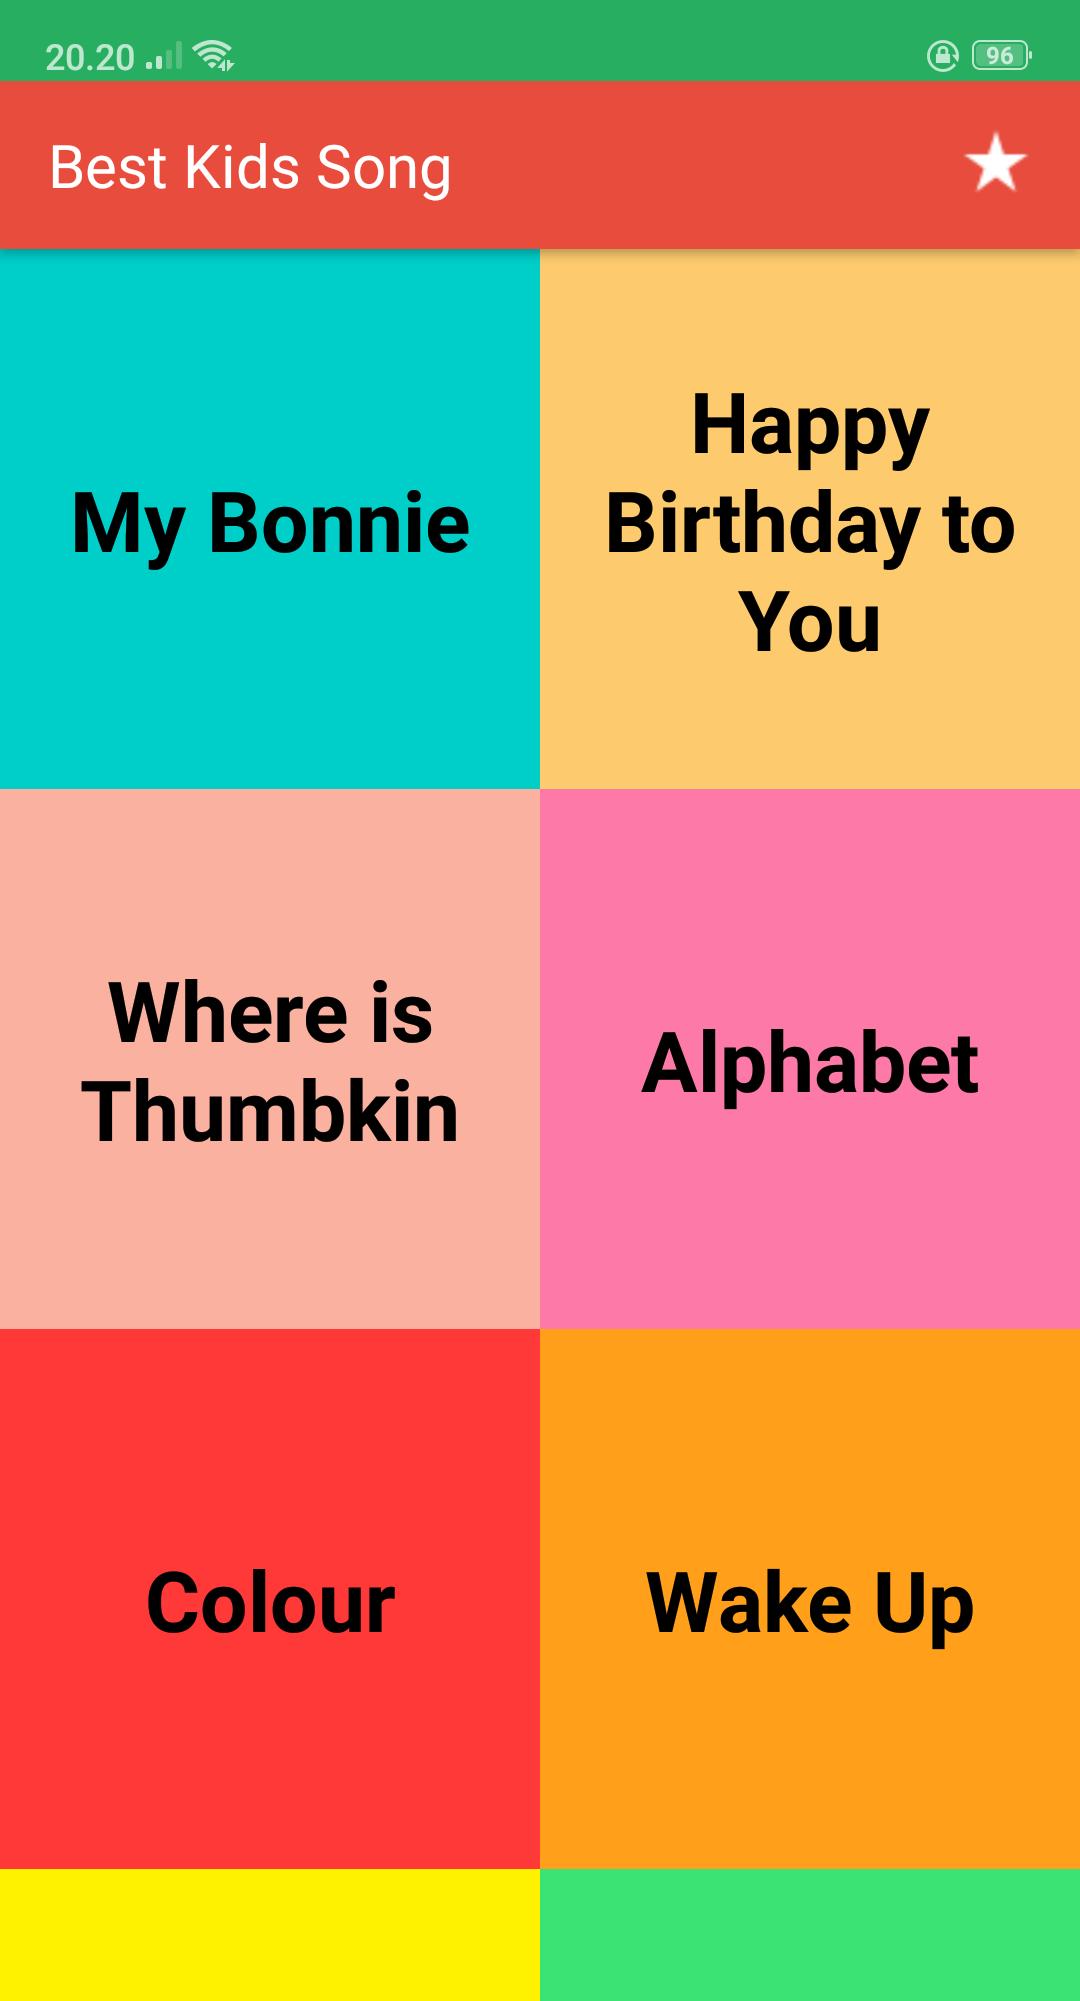 Kids Songs   Best Nursery Rhymes Offline for Android   APK Download